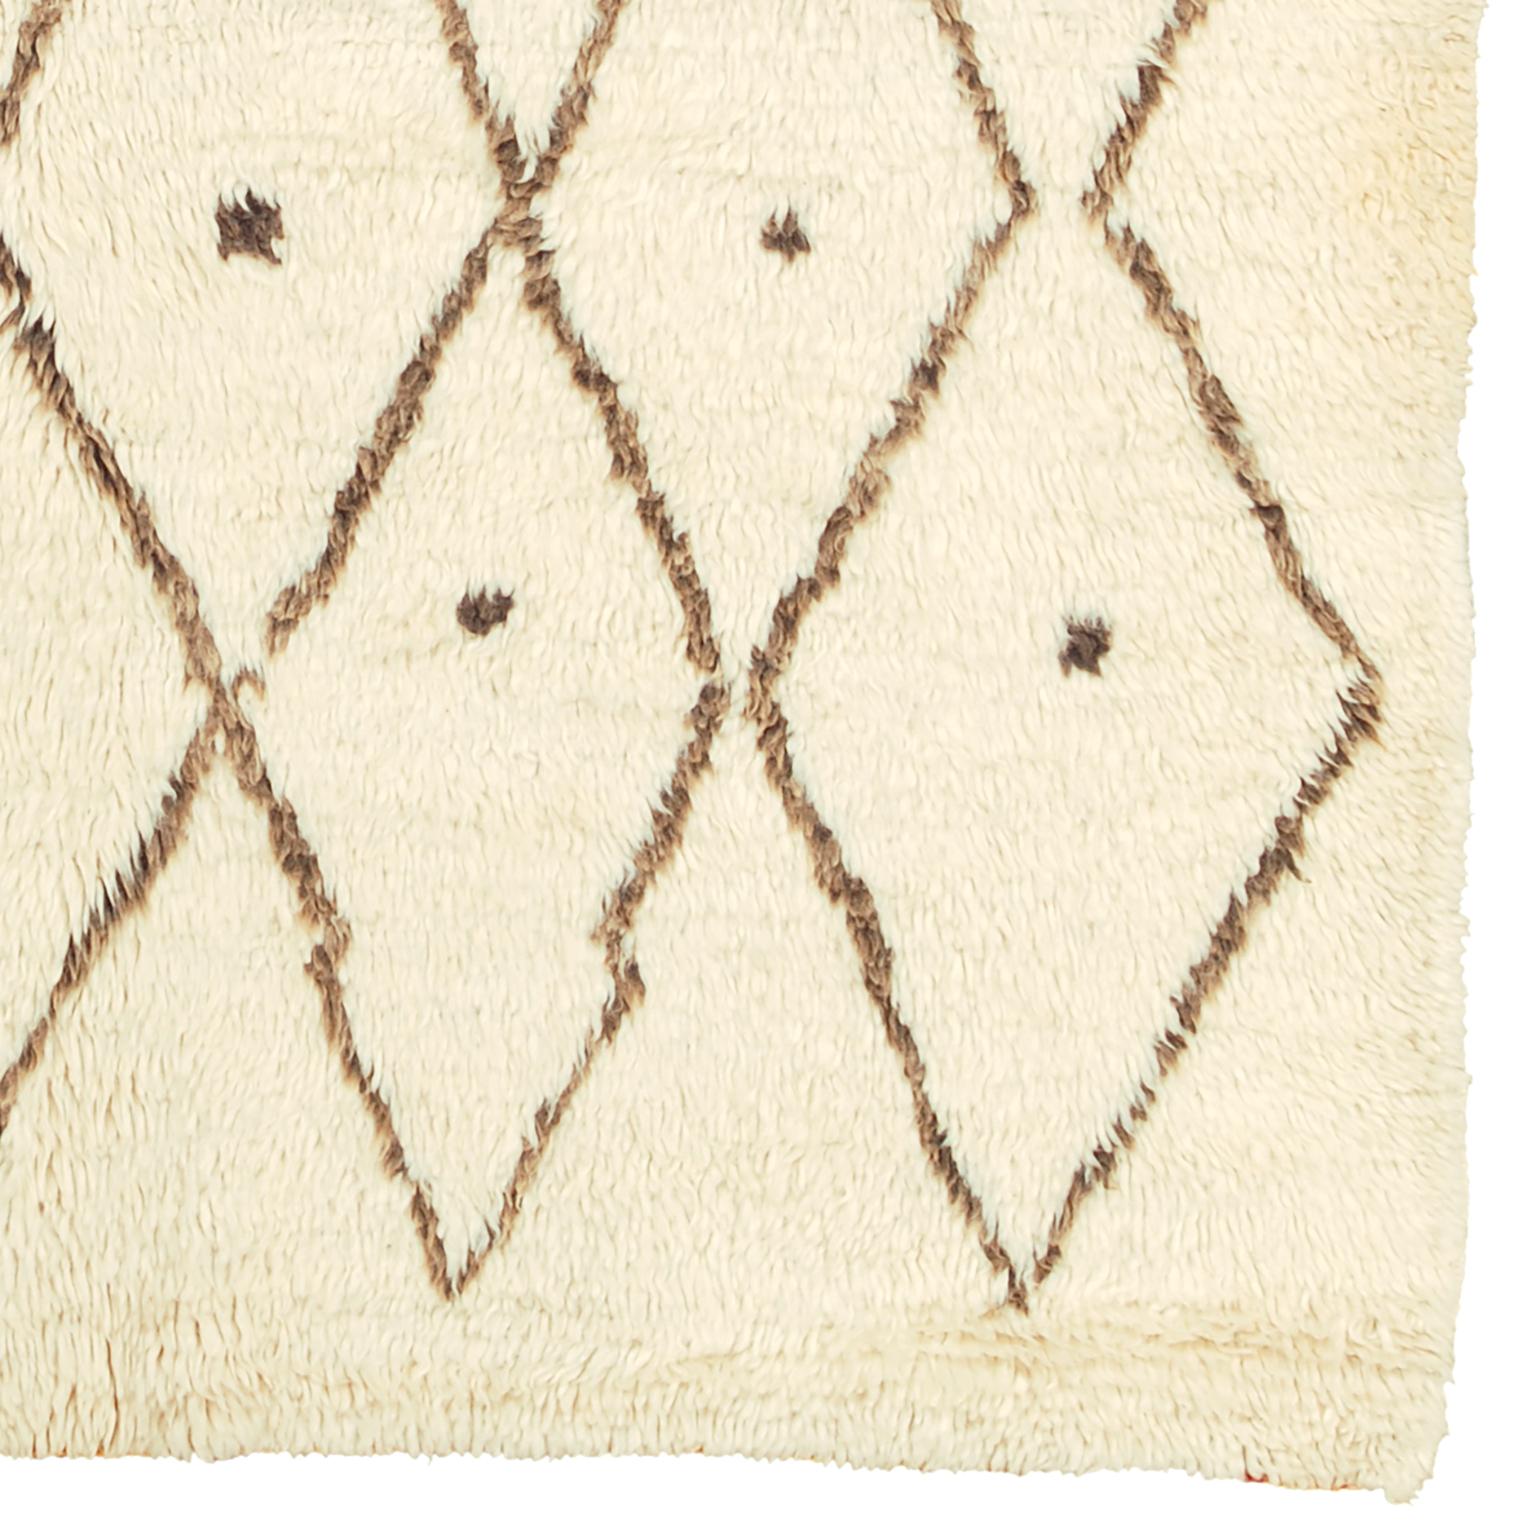 Marokkanischer Beni Ouarain-Teppich aus der Mitte des 20
Marokko, Mitte des 20. Jahrhunderts
Handgewebt mit Wolle
Mit traditionellem Rautenmuster, natürlichem Wollgrund und braunen Wolllinien.